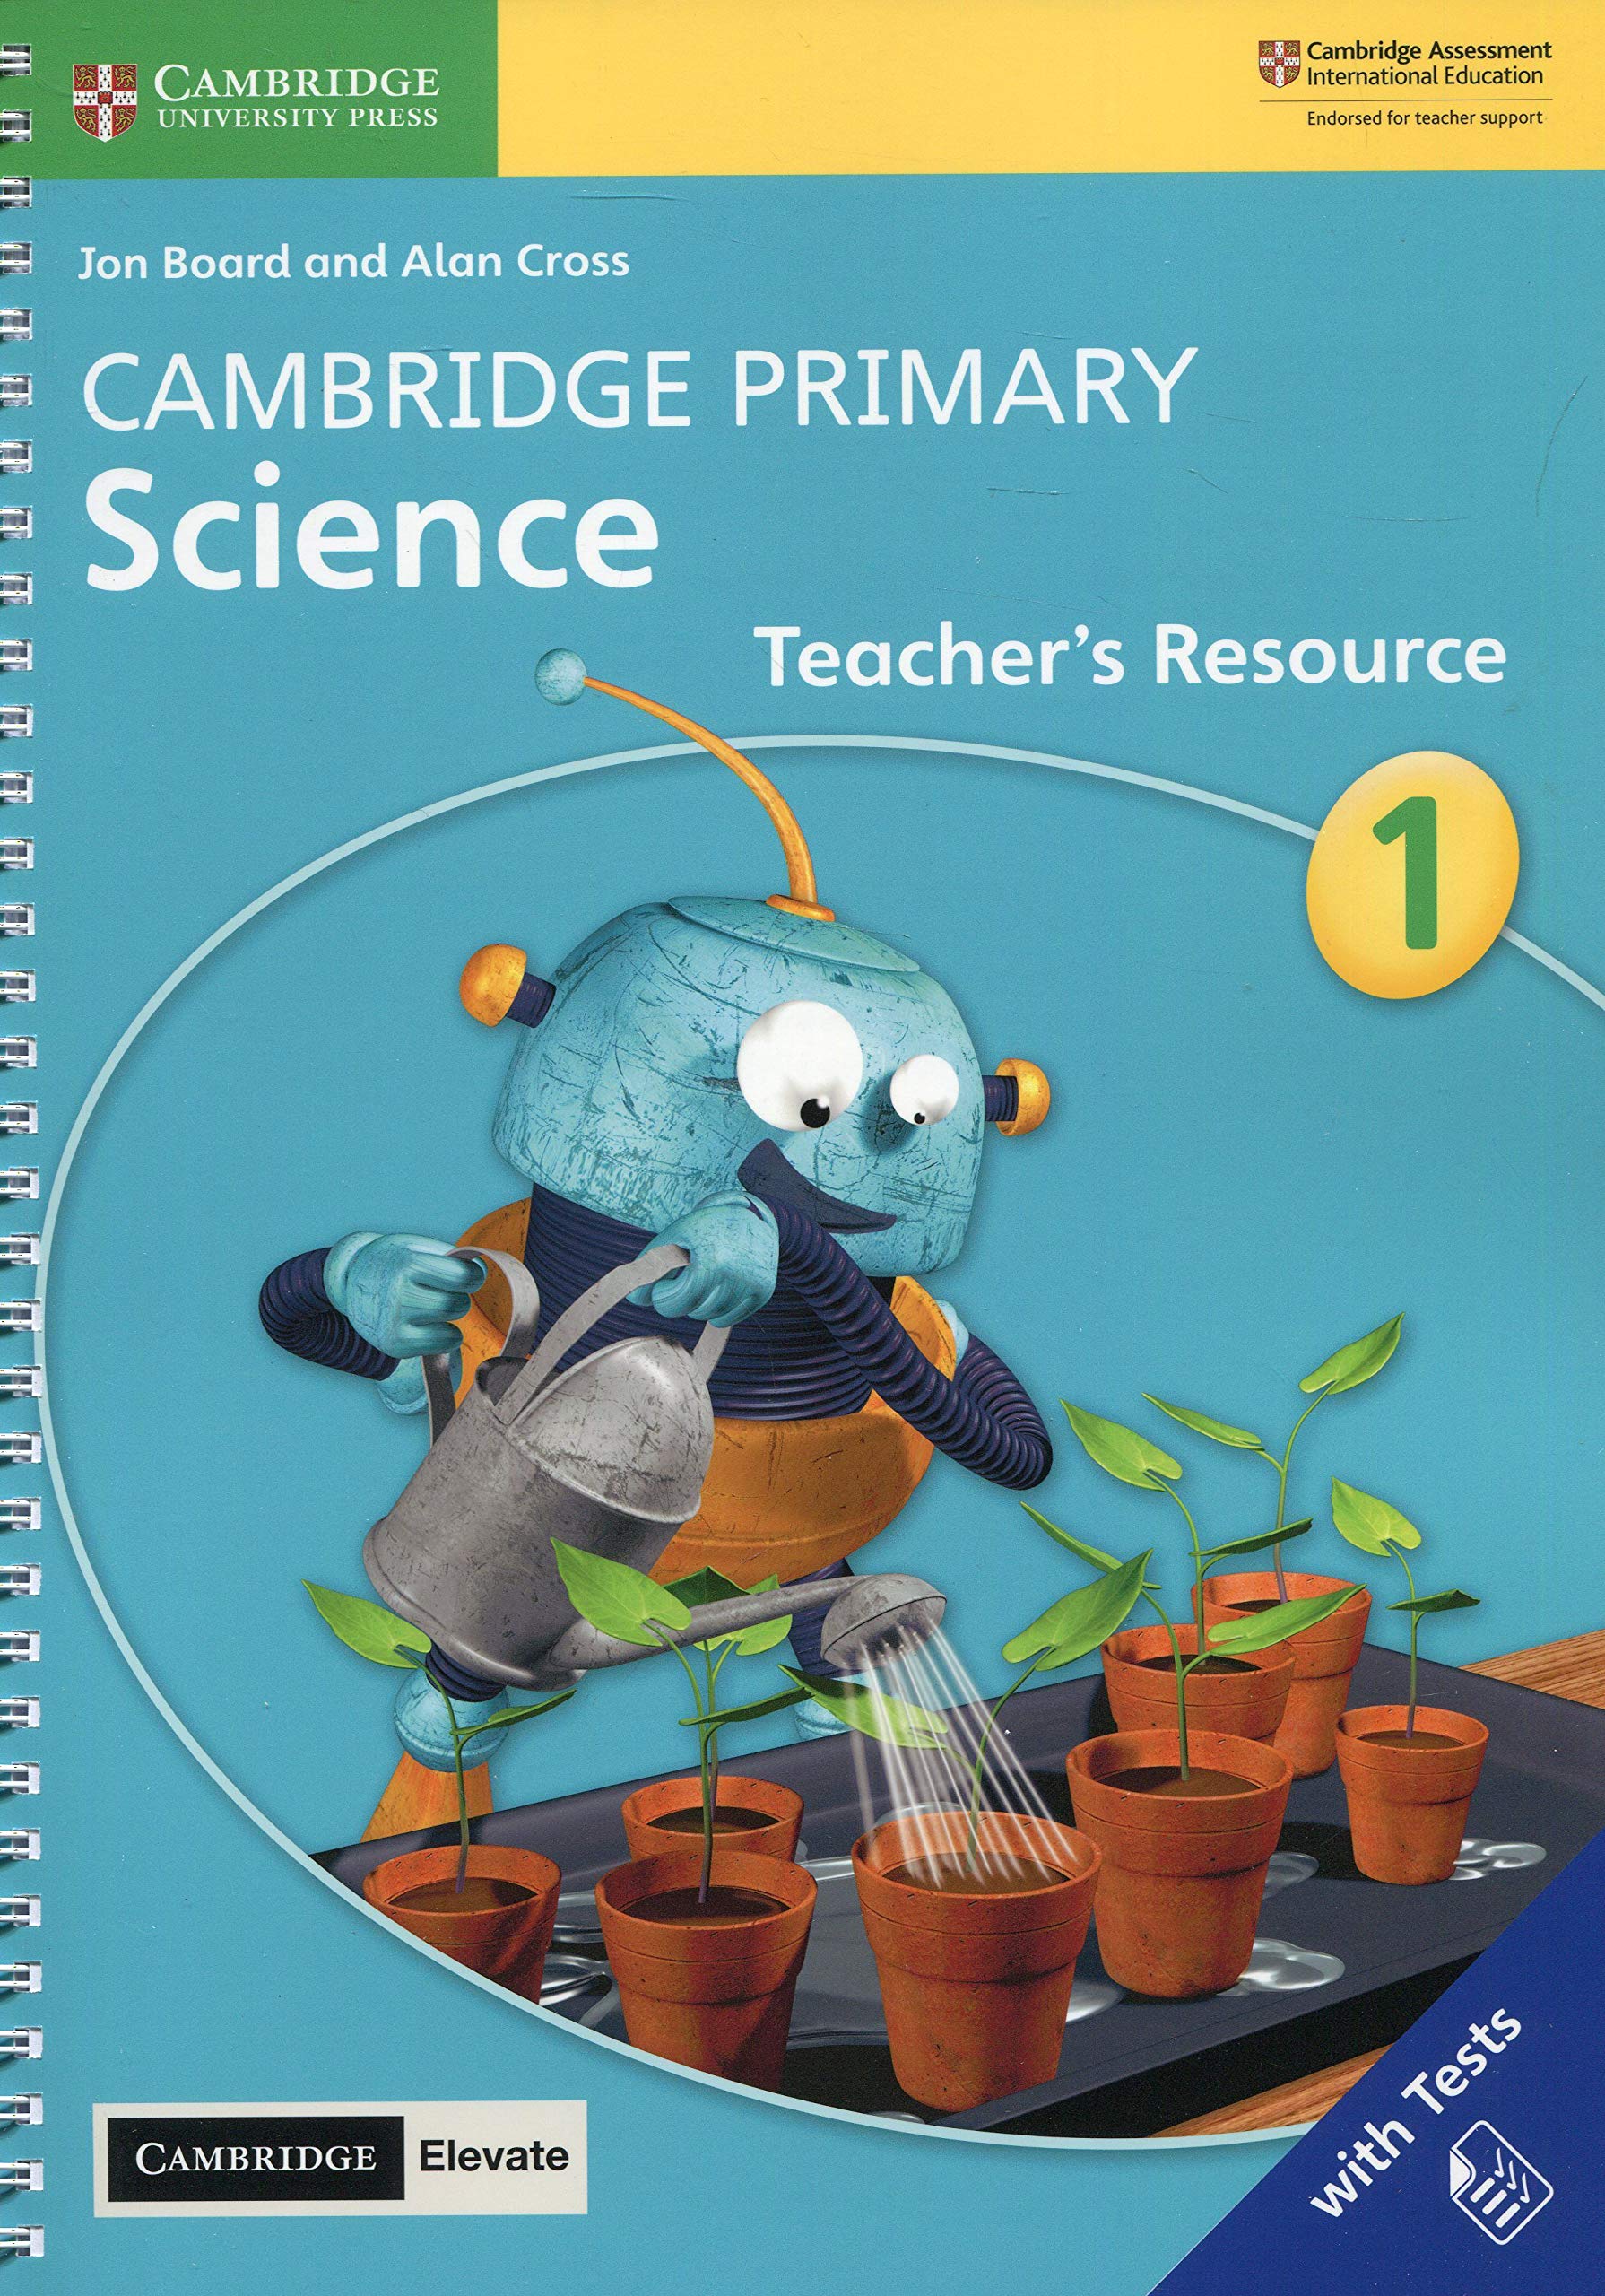 Cambridge teachers book